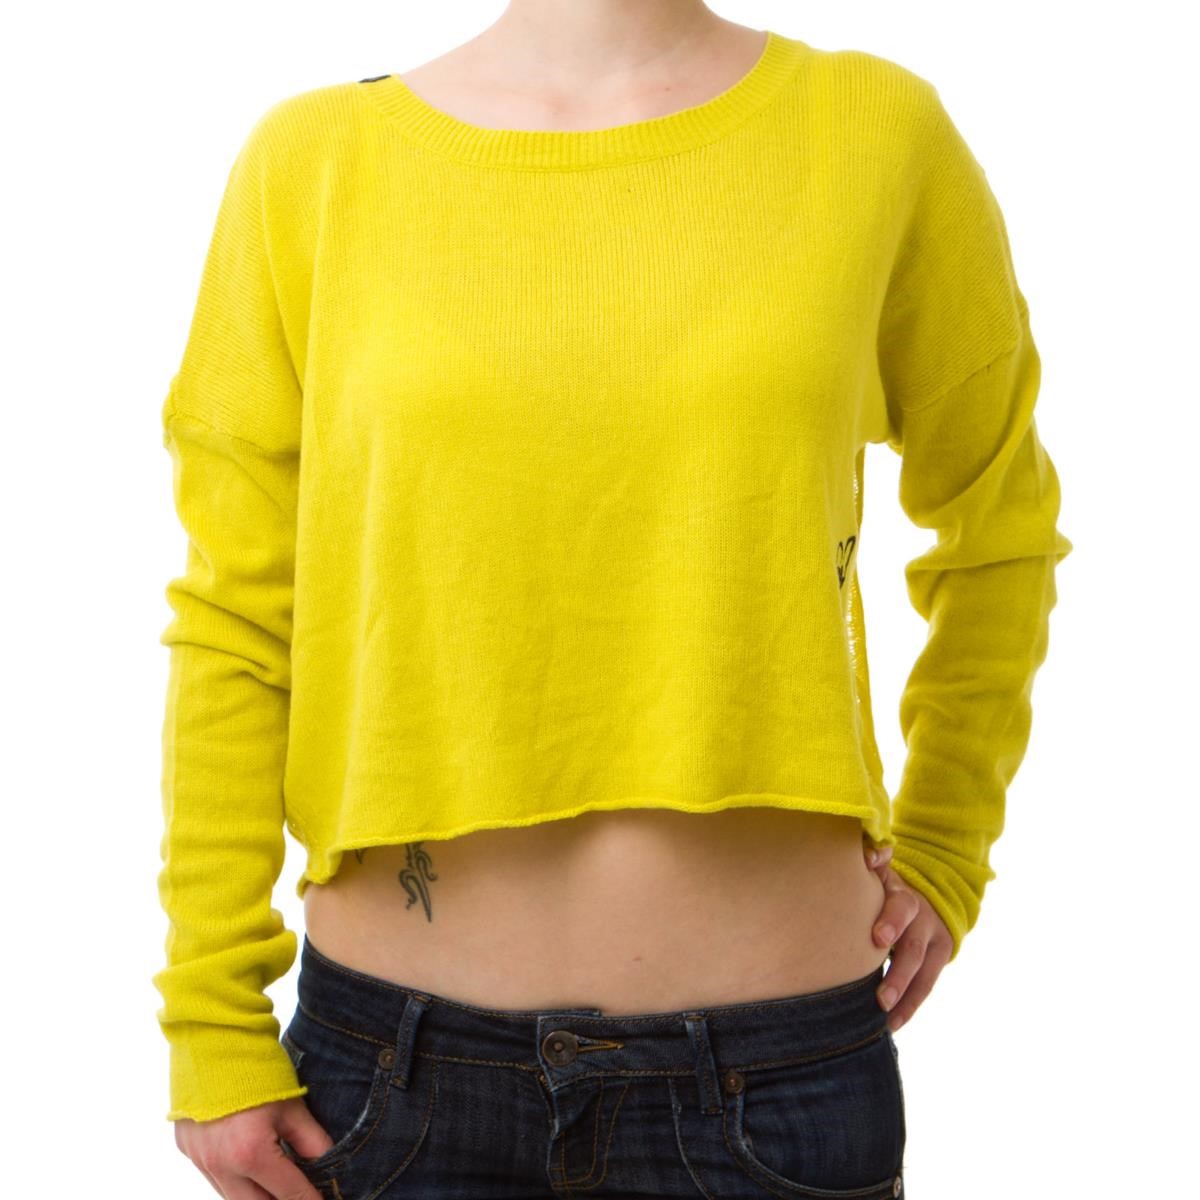 Freizeit/Streetwear Bekleidung-Pullover/Longsleeves - Fox Girls Crop Pullover Wild Weekend Lemonade